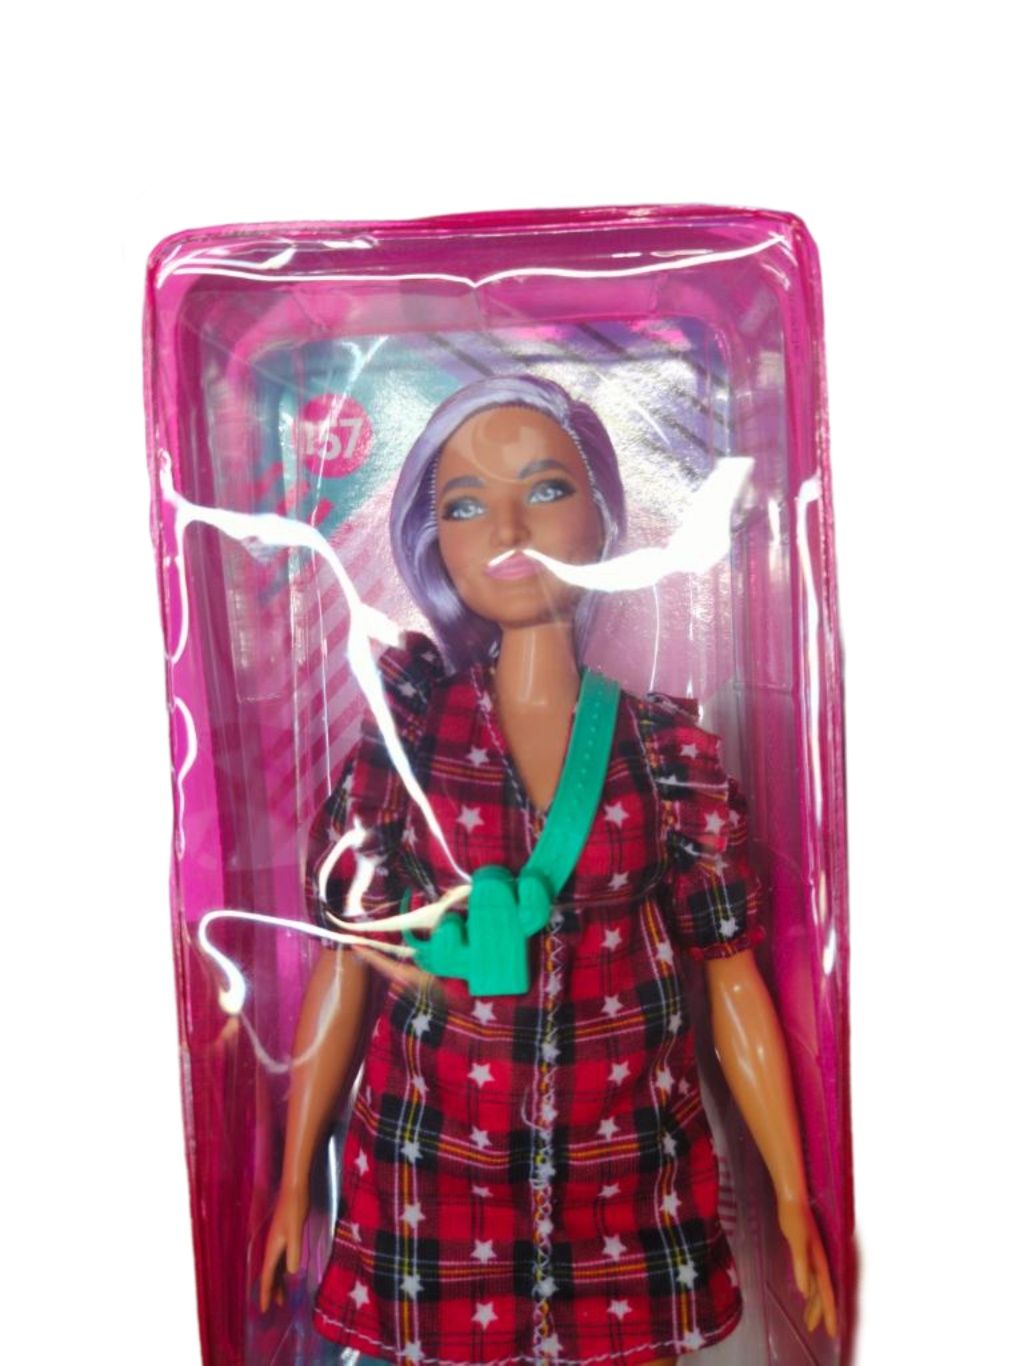 Nowa lalka barbie